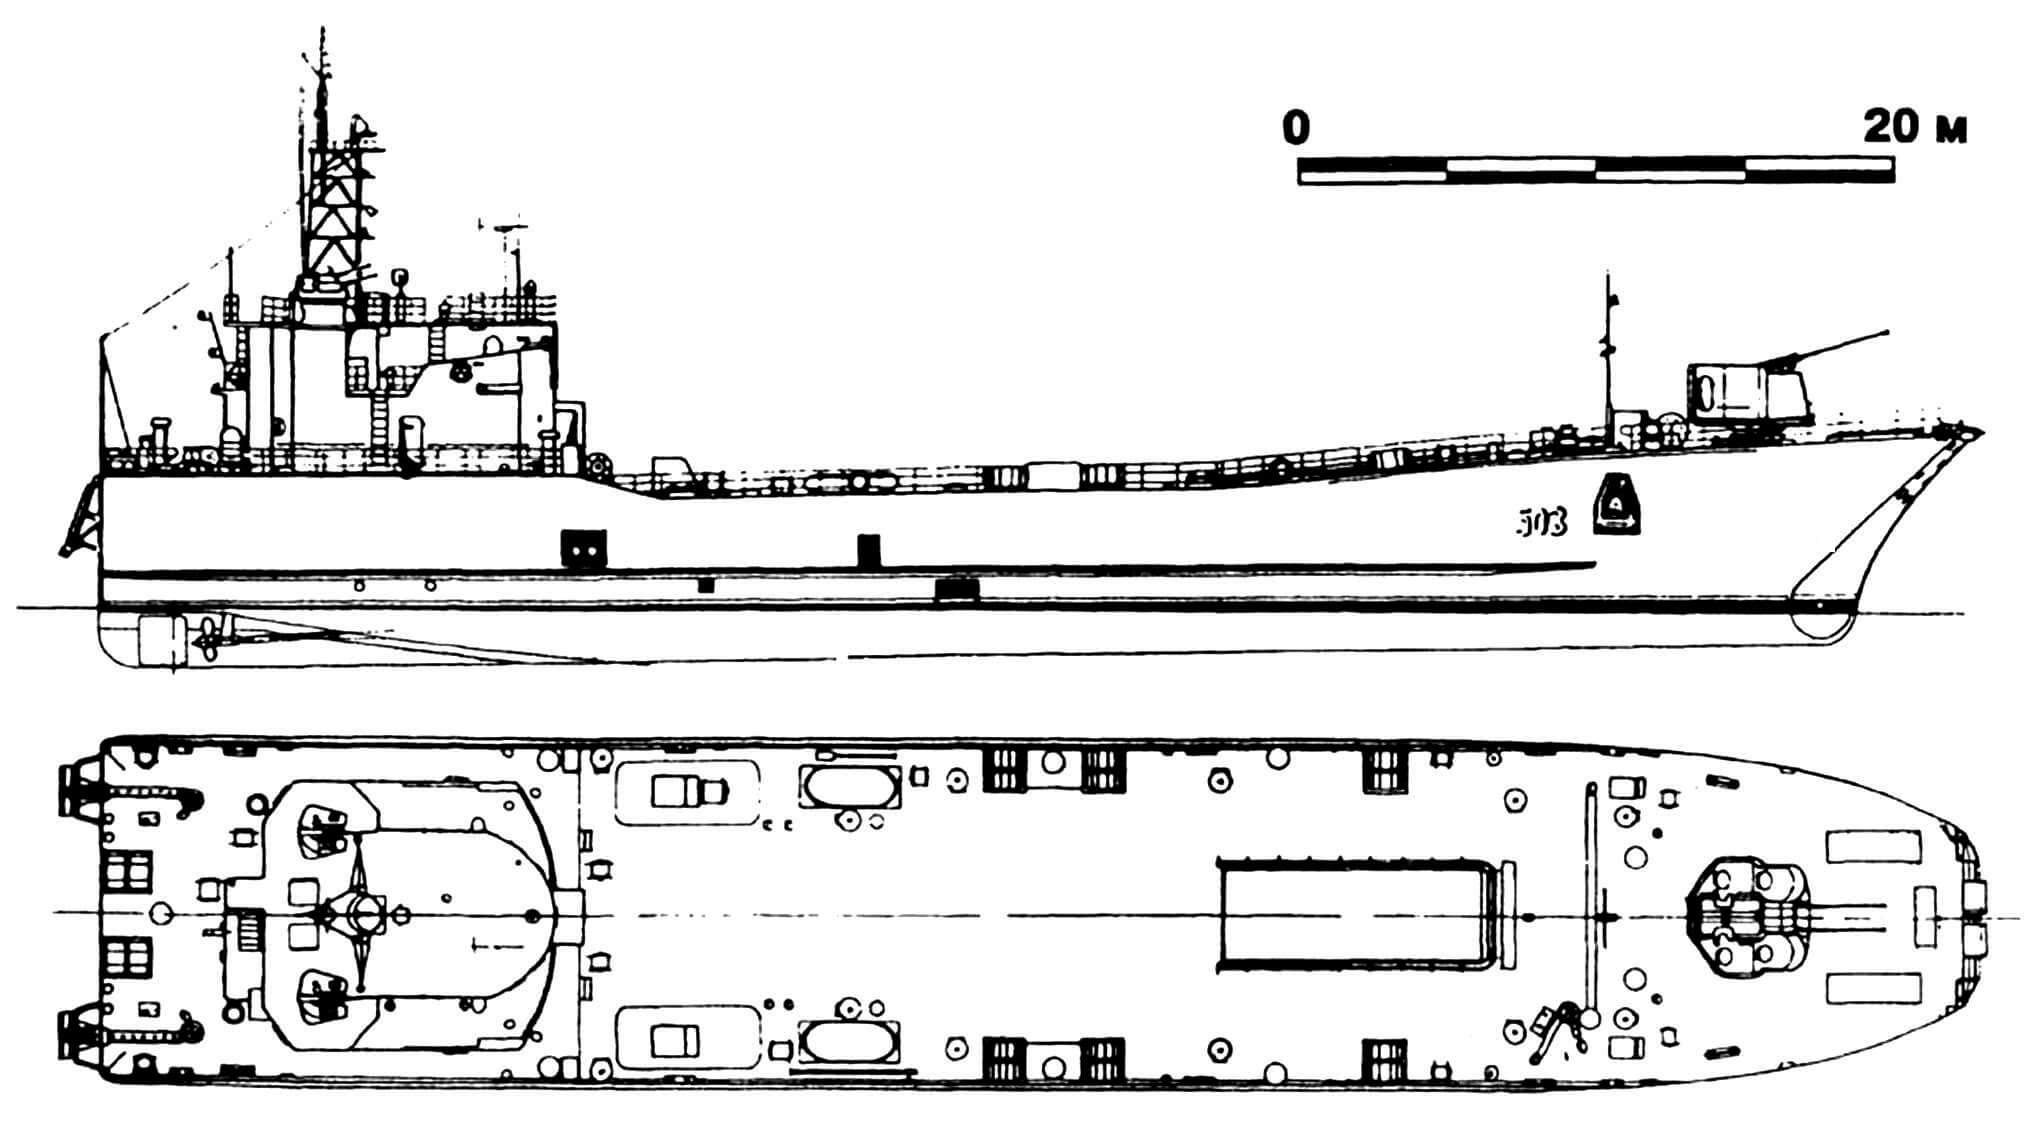 49. Малый десантный корабль «Эберсвальде» (тип «Робби»), ГДР, 1962 г. Водоизмещение стандартное 600 т, полное 950 т. Длина 65,0 м, ширина 11,5 м, осадка 2,0 м. Два дизеля общей мощностью 4800 л.с., скорость 12 узлов. Вооружение: два 57-мм зенитных орудия и четыре 25-мм автомата. Вместимость: 14 танков или 500 т груза. Всего в 1962 — 1964 годах построено 10 единиц.